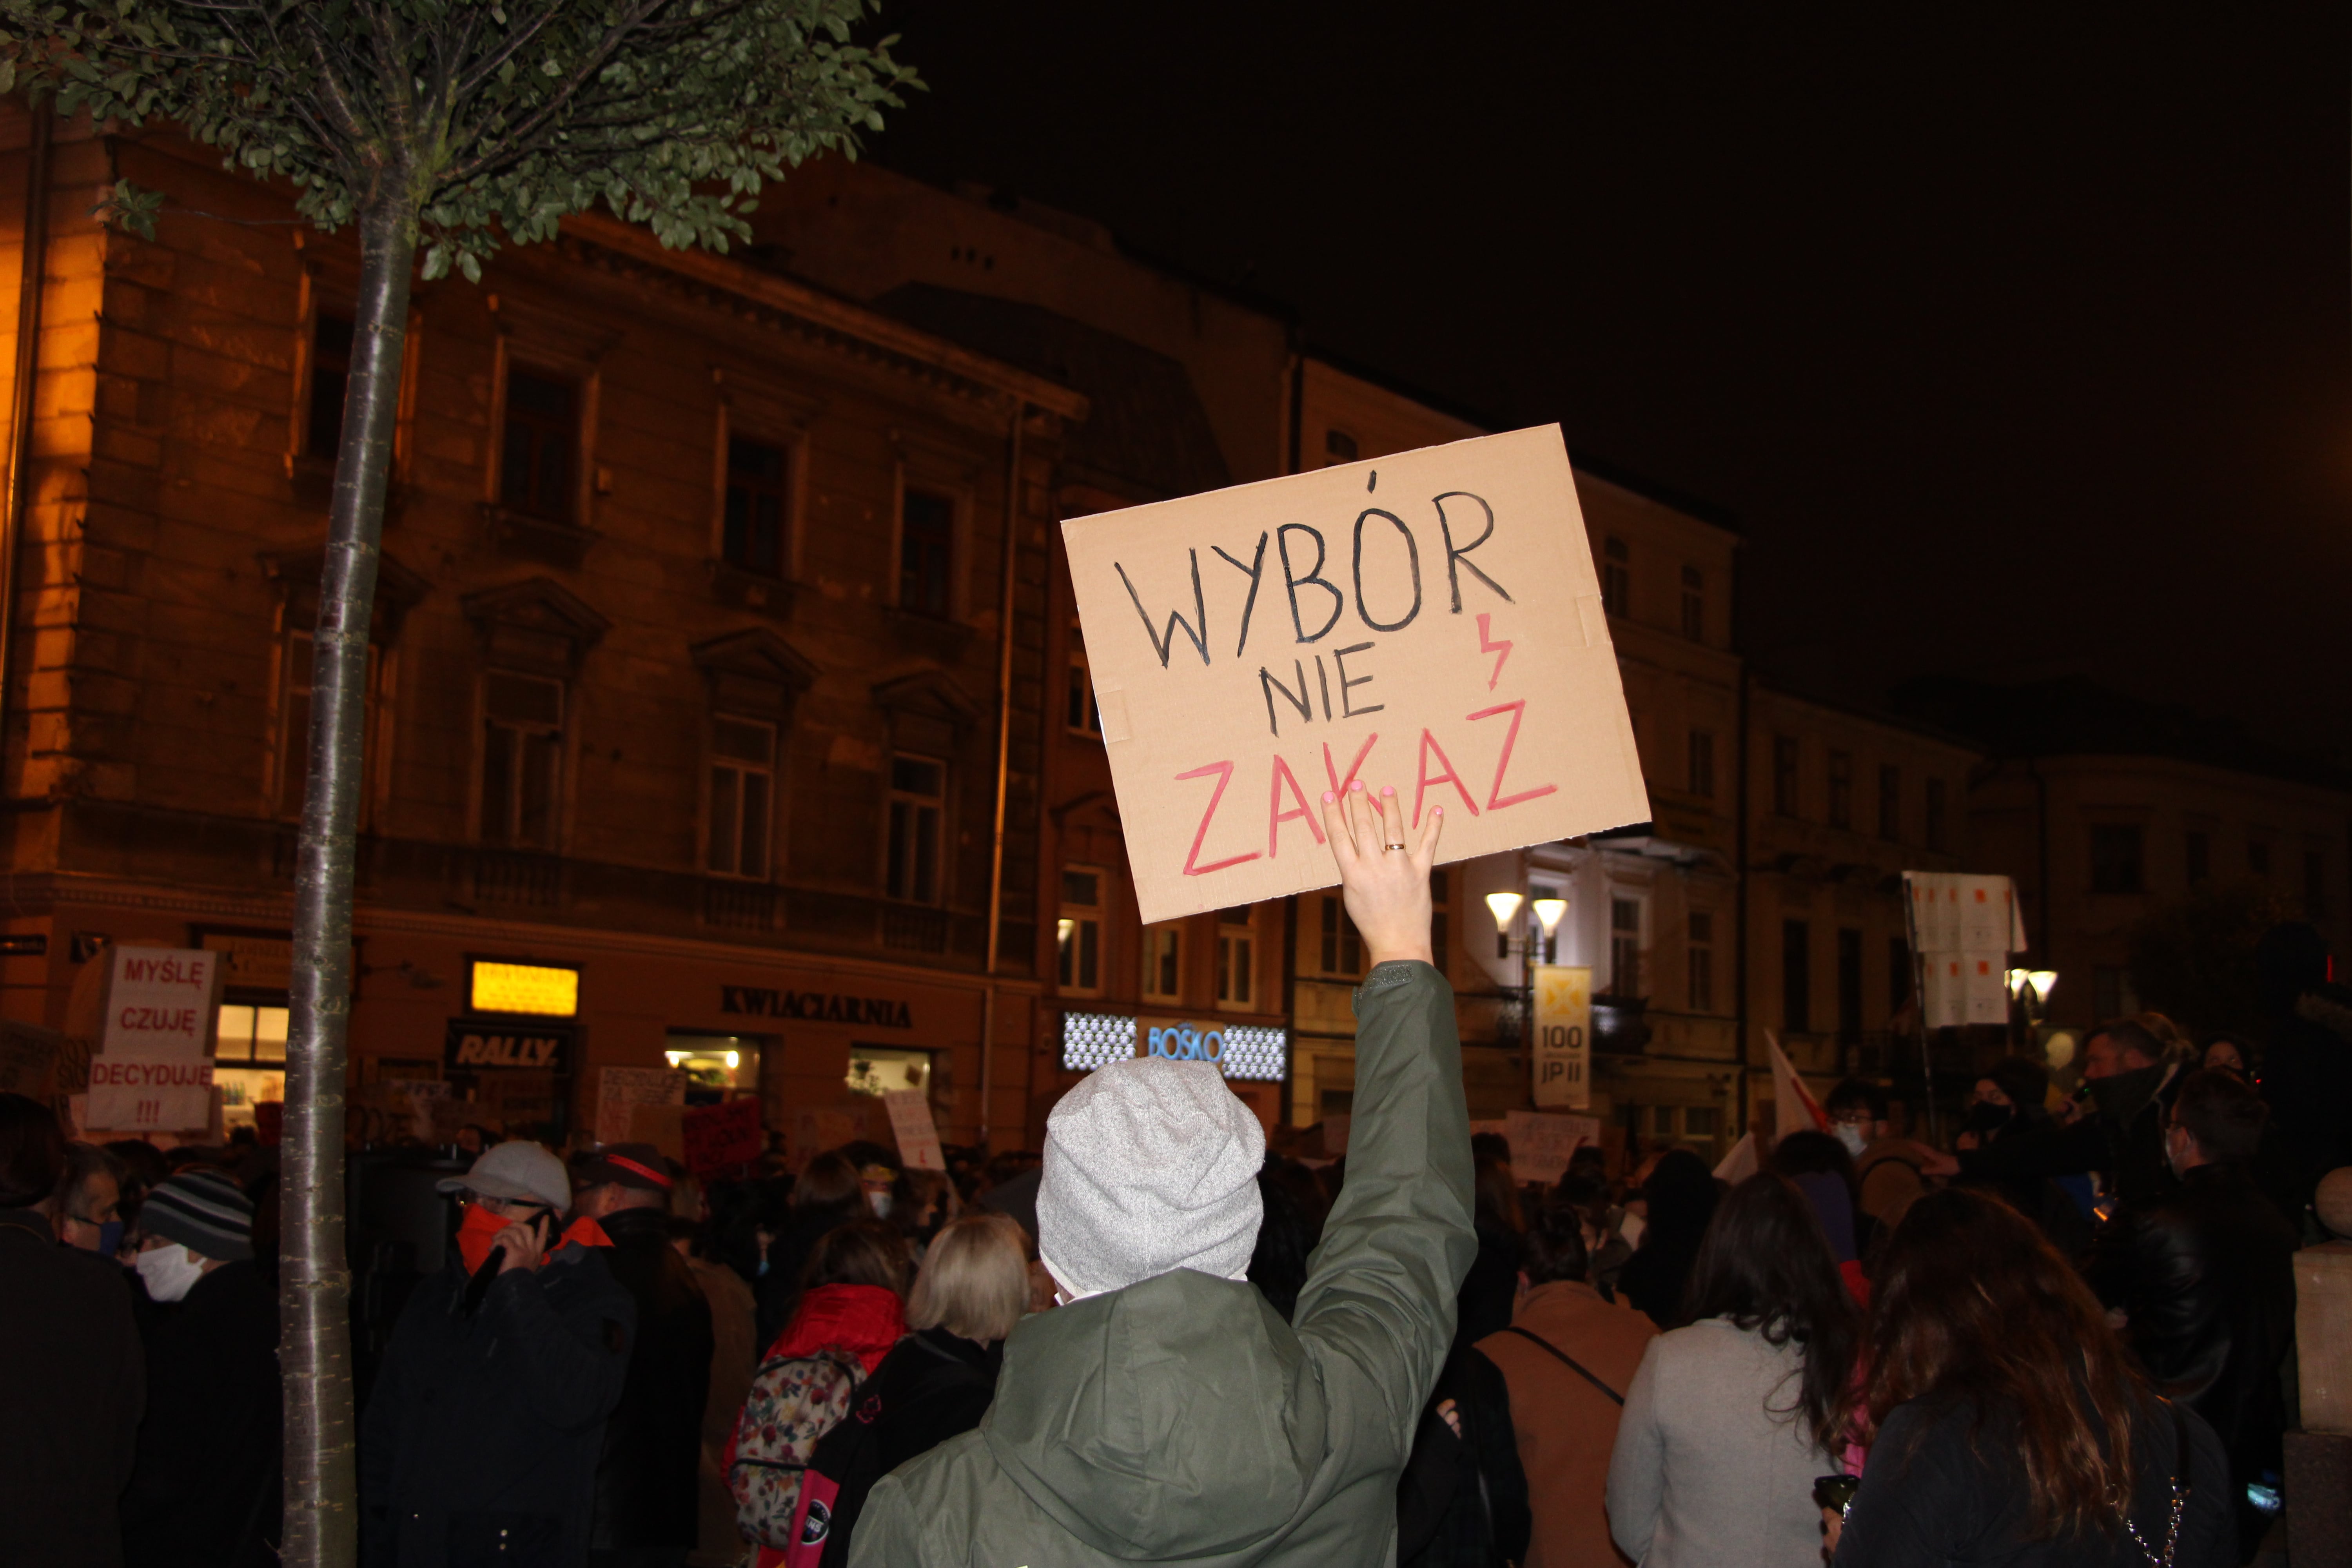 Jutro lubelska manifestacja "Rewolucja pod gwiazdami" w obronie praw kobiet - Zdjęcie główne